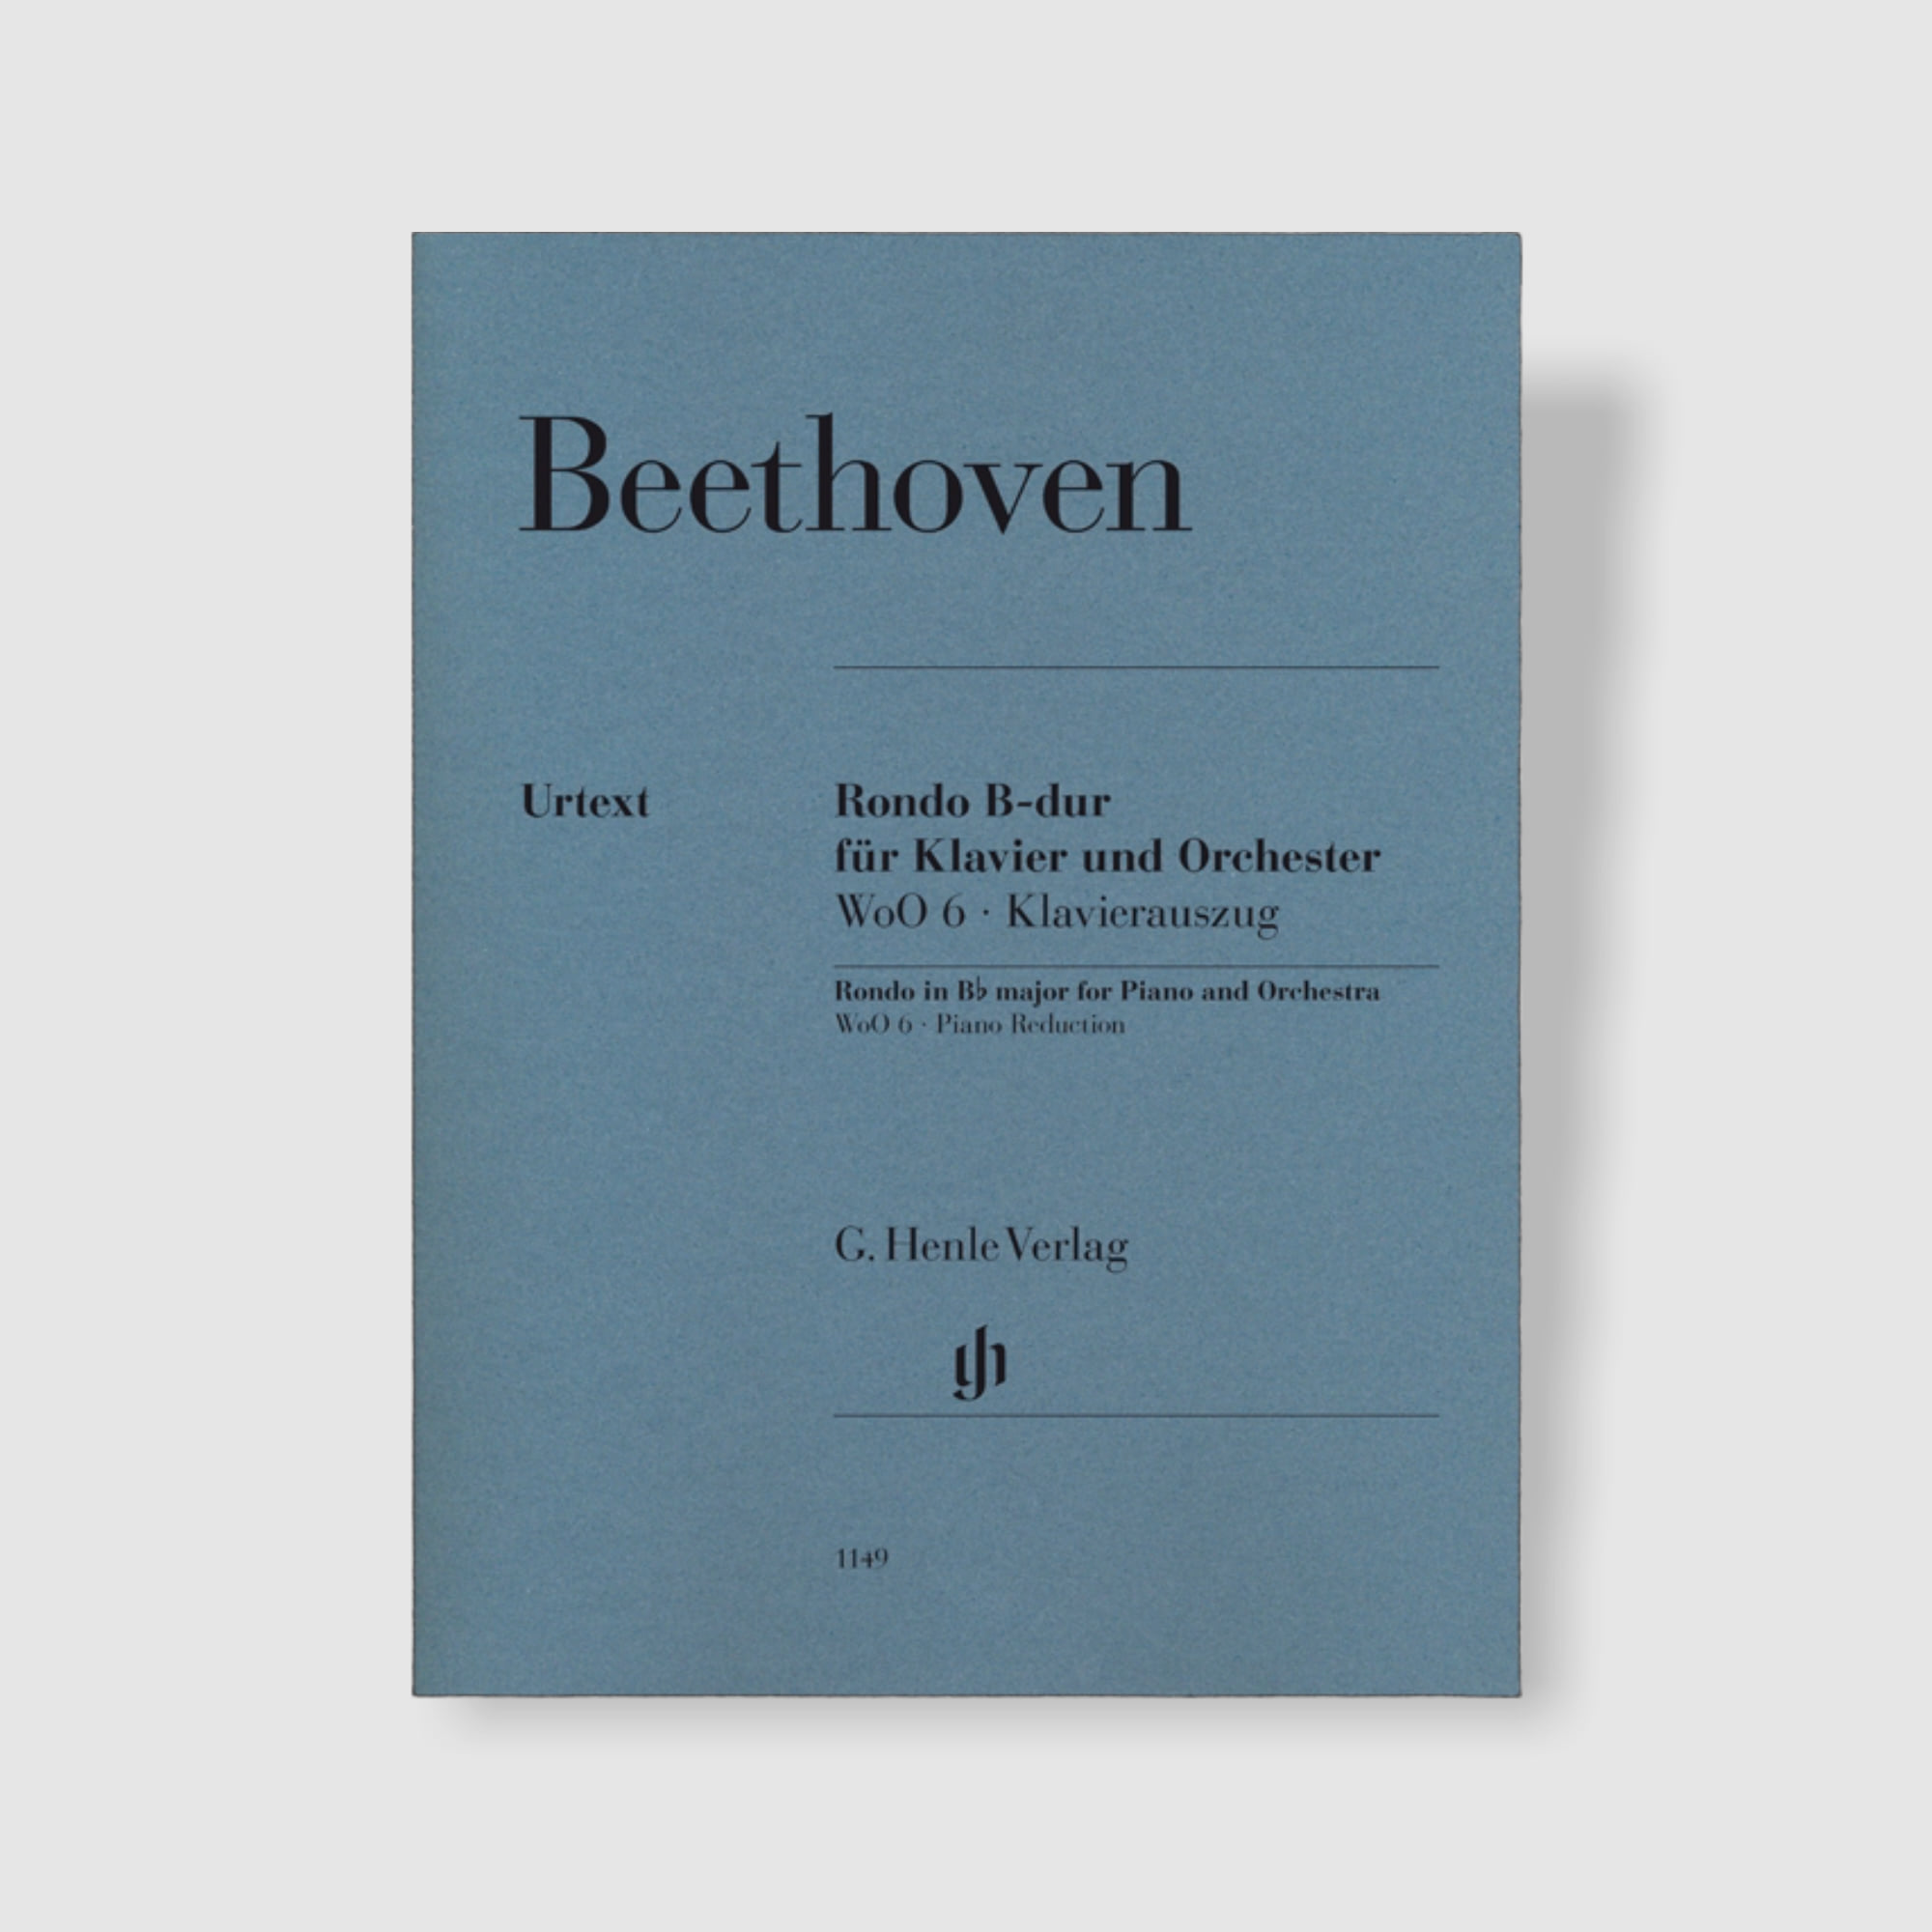 베토벤 피아노와 오케스트라를 위한 론도 in B flat Major, WoO 6